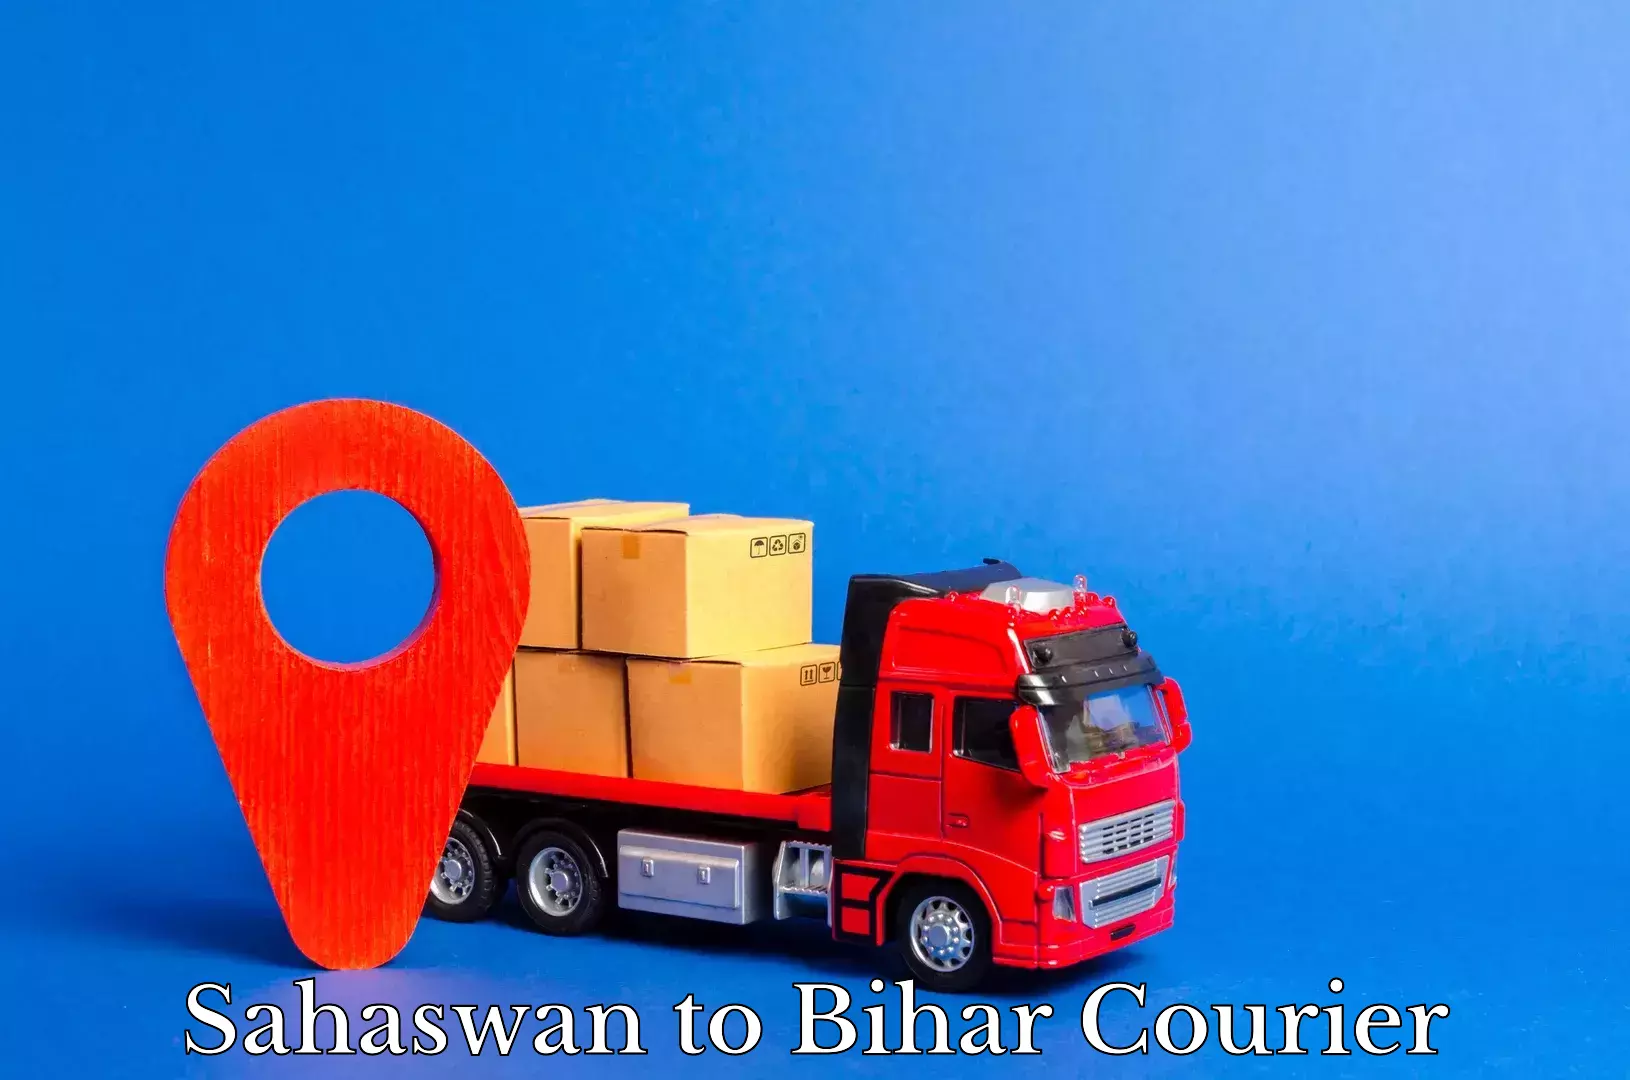 Doorstep delivery service Sahaswan to Bihar